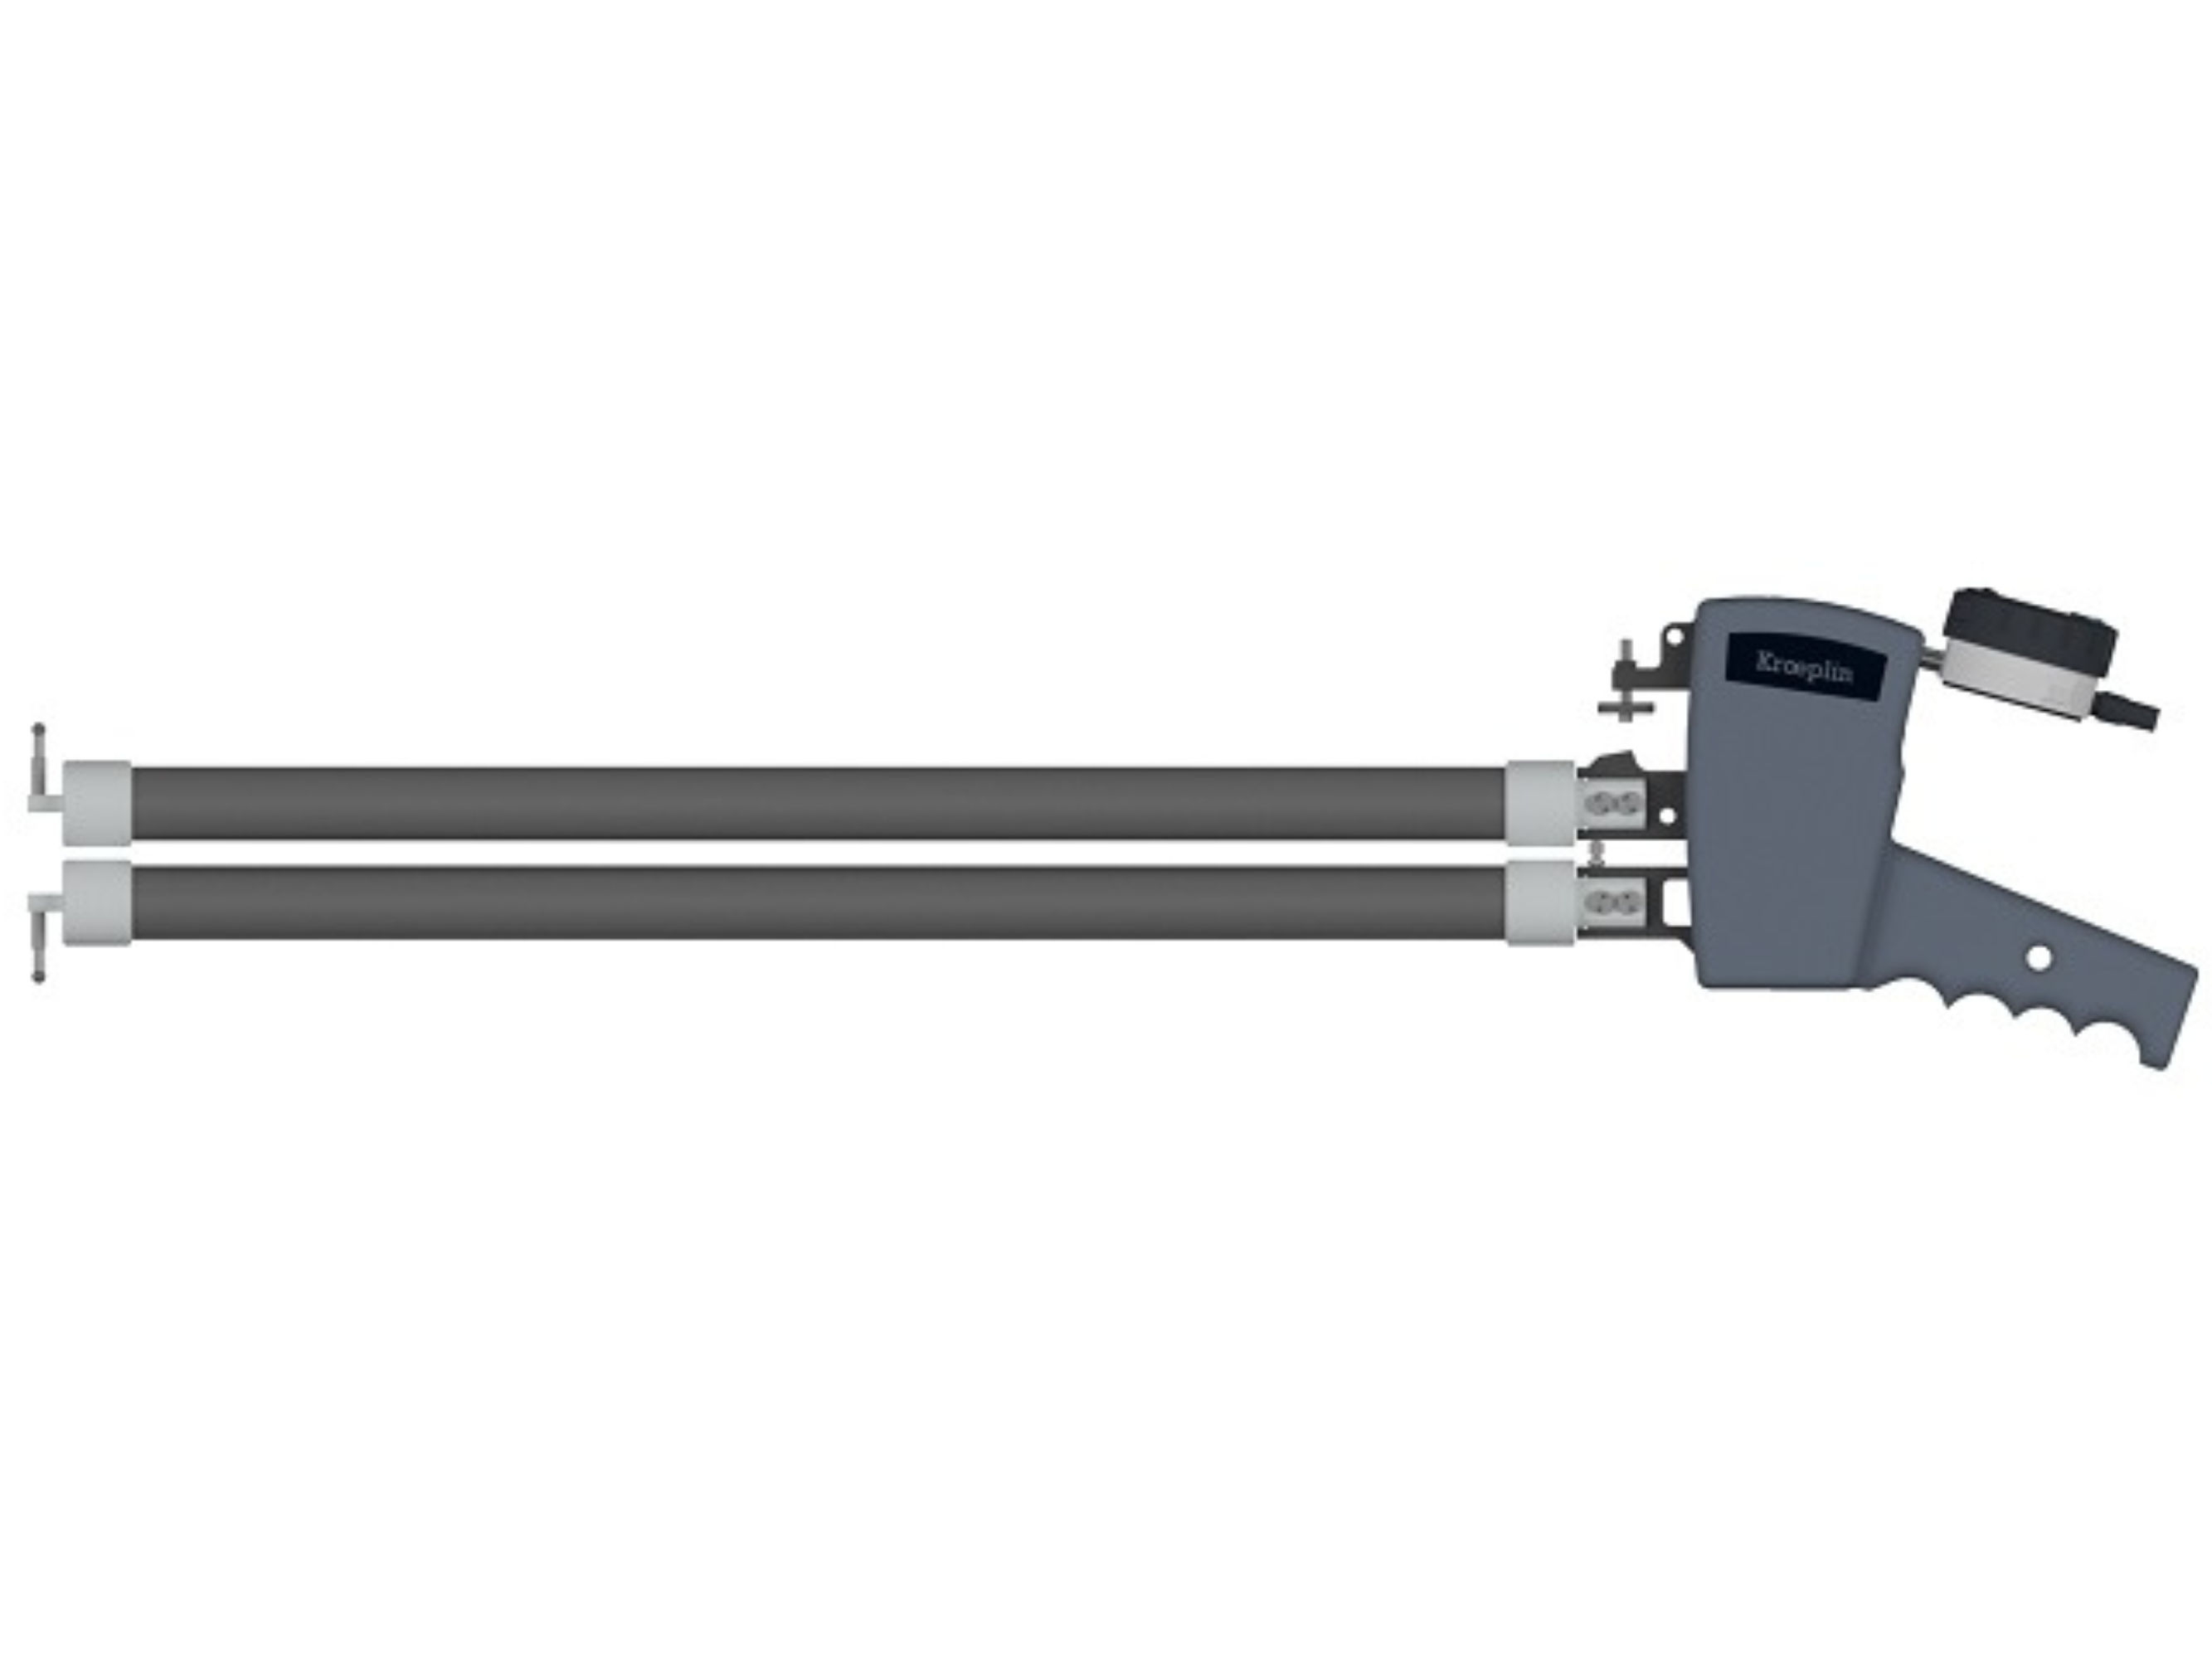 Digital Internal Caliper Gauge 150-250mm, 0.01mm